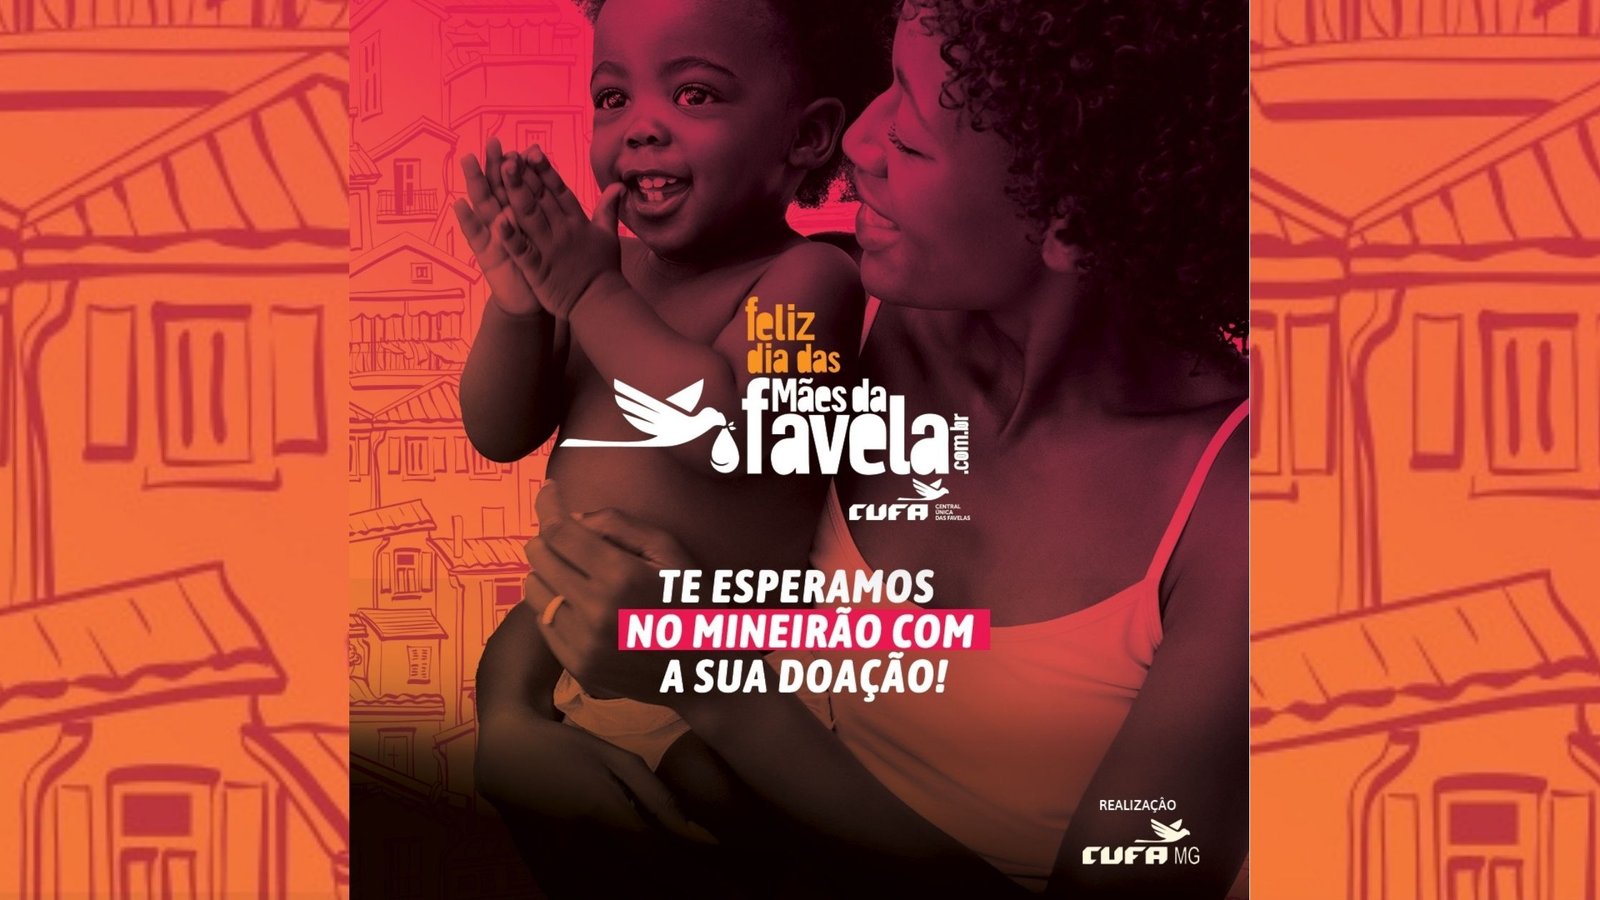 Feliz Dia das Mães da Favela
Divulgação Cufa Minas